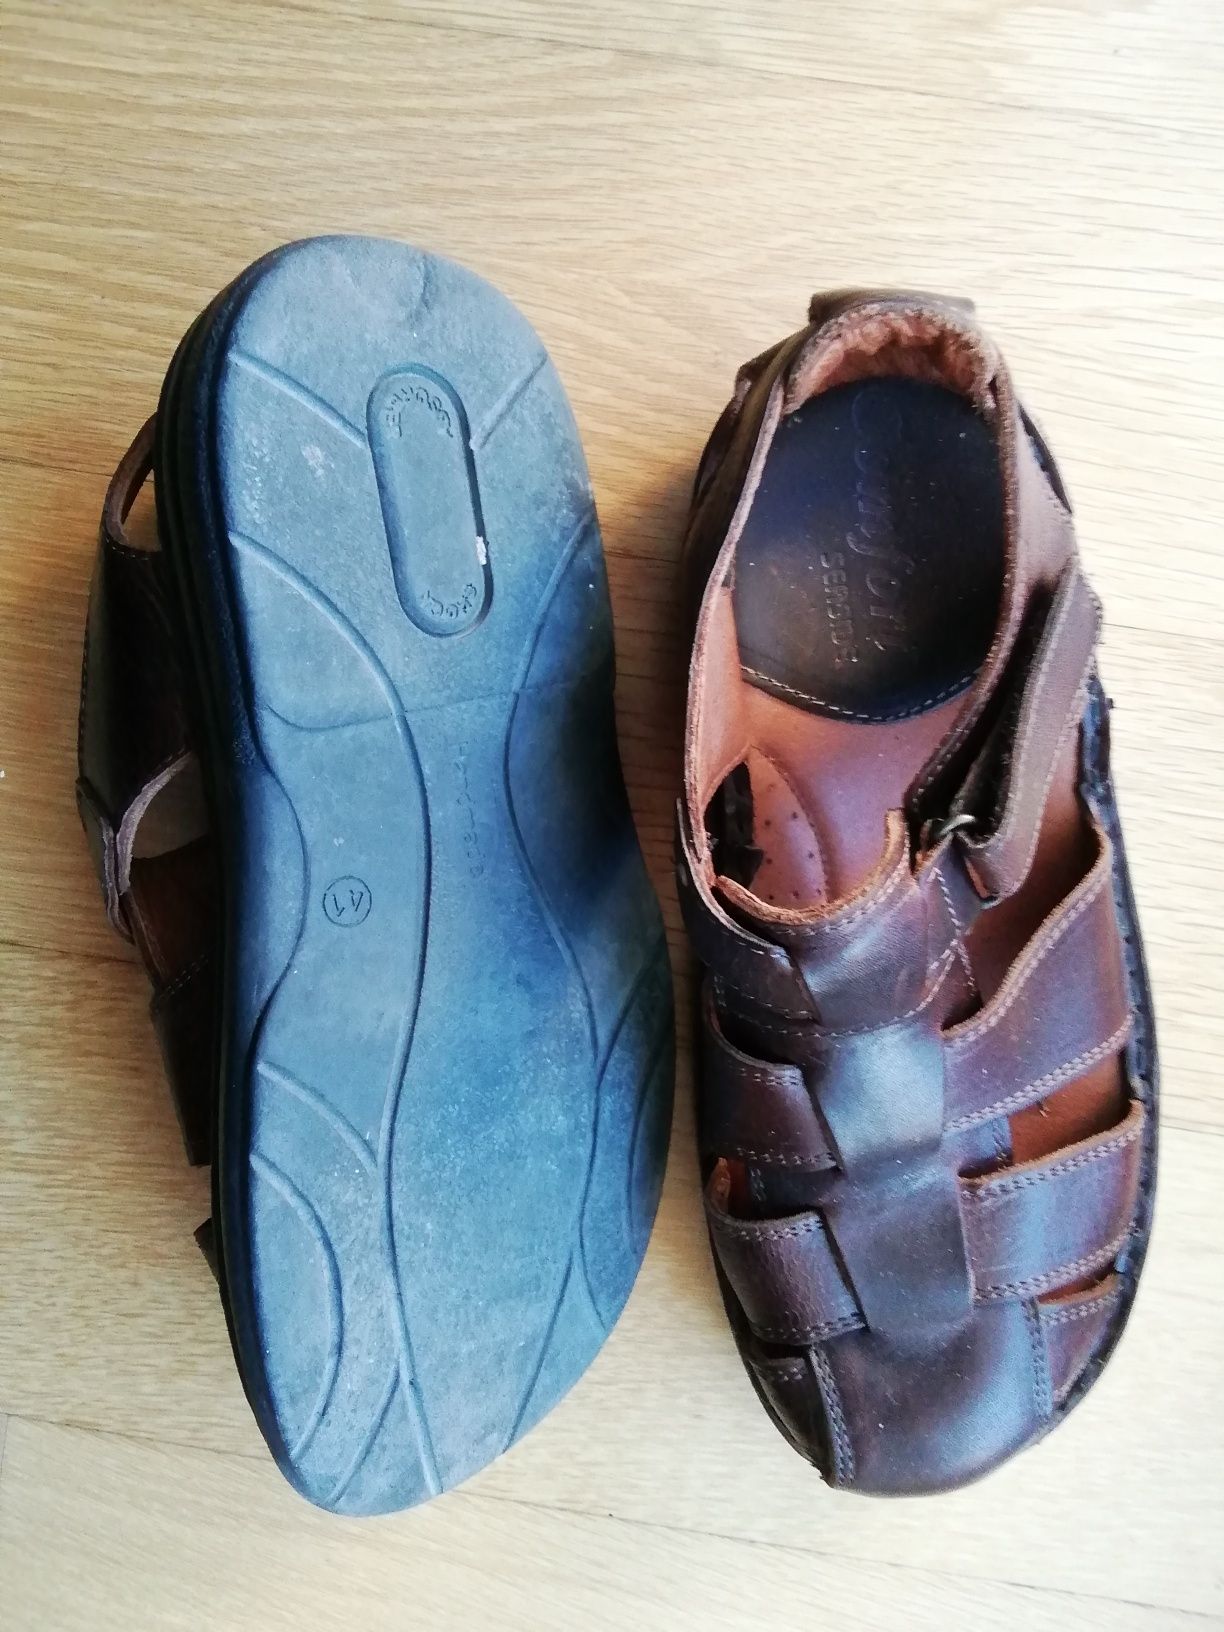 Sandália n. 41 e Sapatos pretos n. 9, para homem